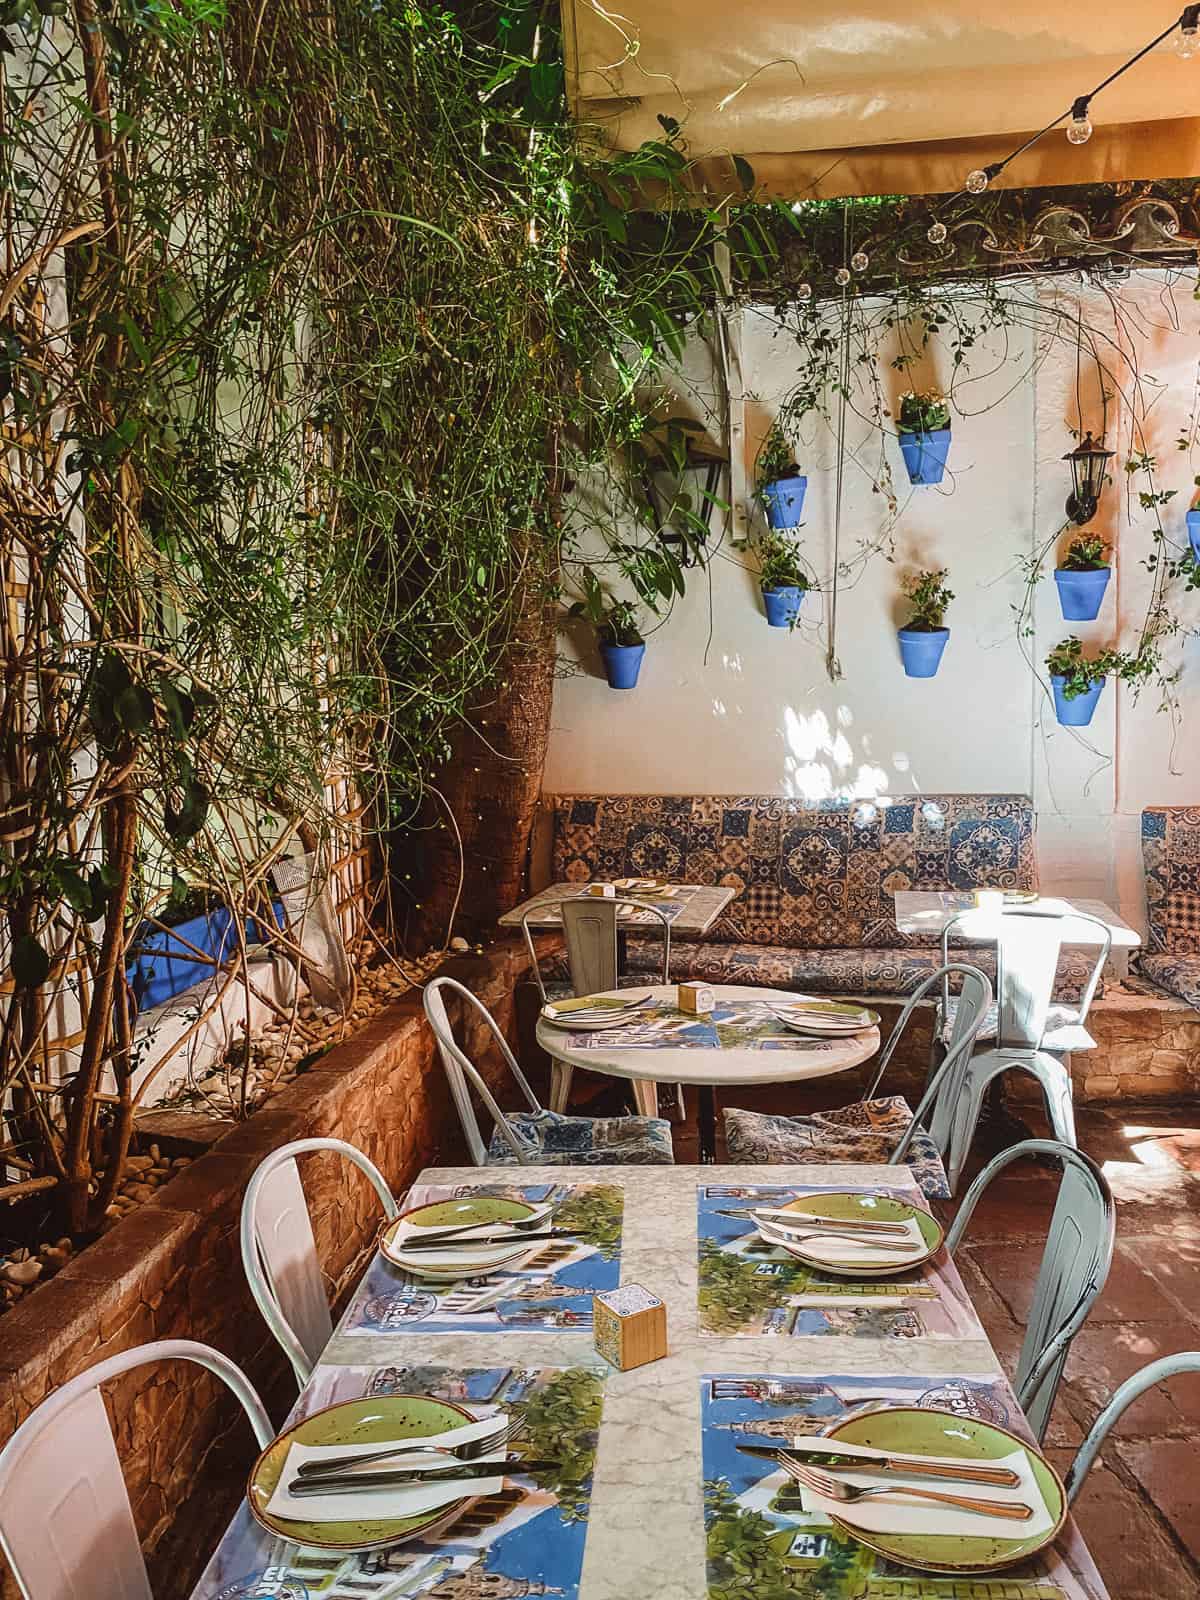 El Rincon de Carmen a cute restaurant with a garden inside